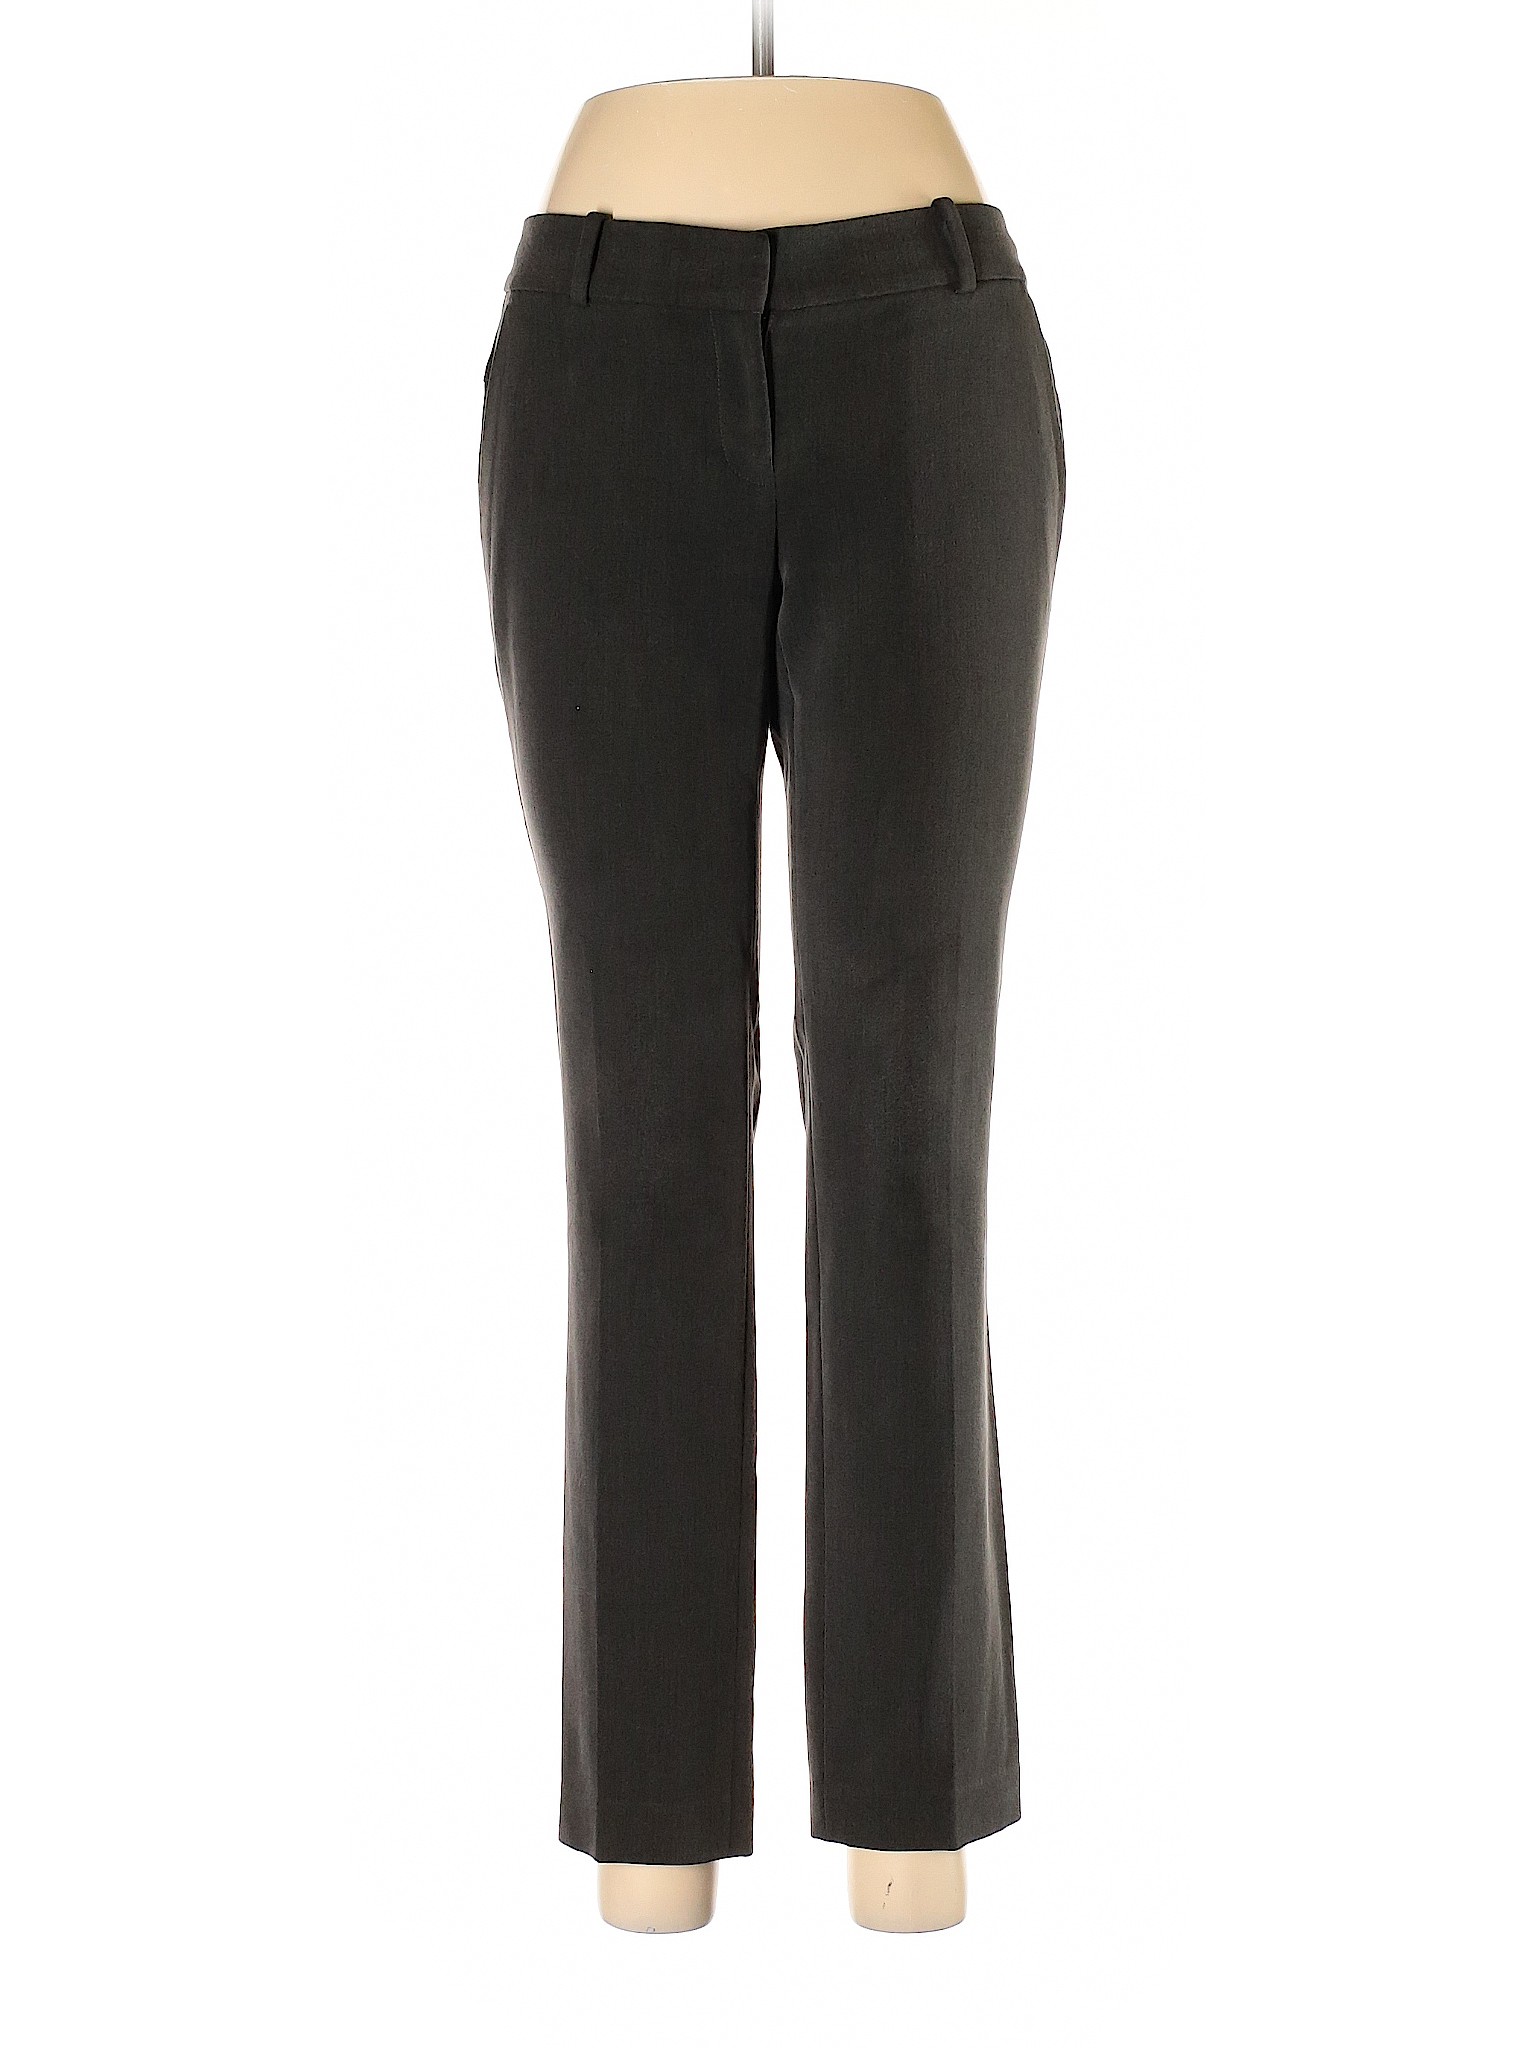 Ann Taylor Women Black Dress Pants 0 | eBay